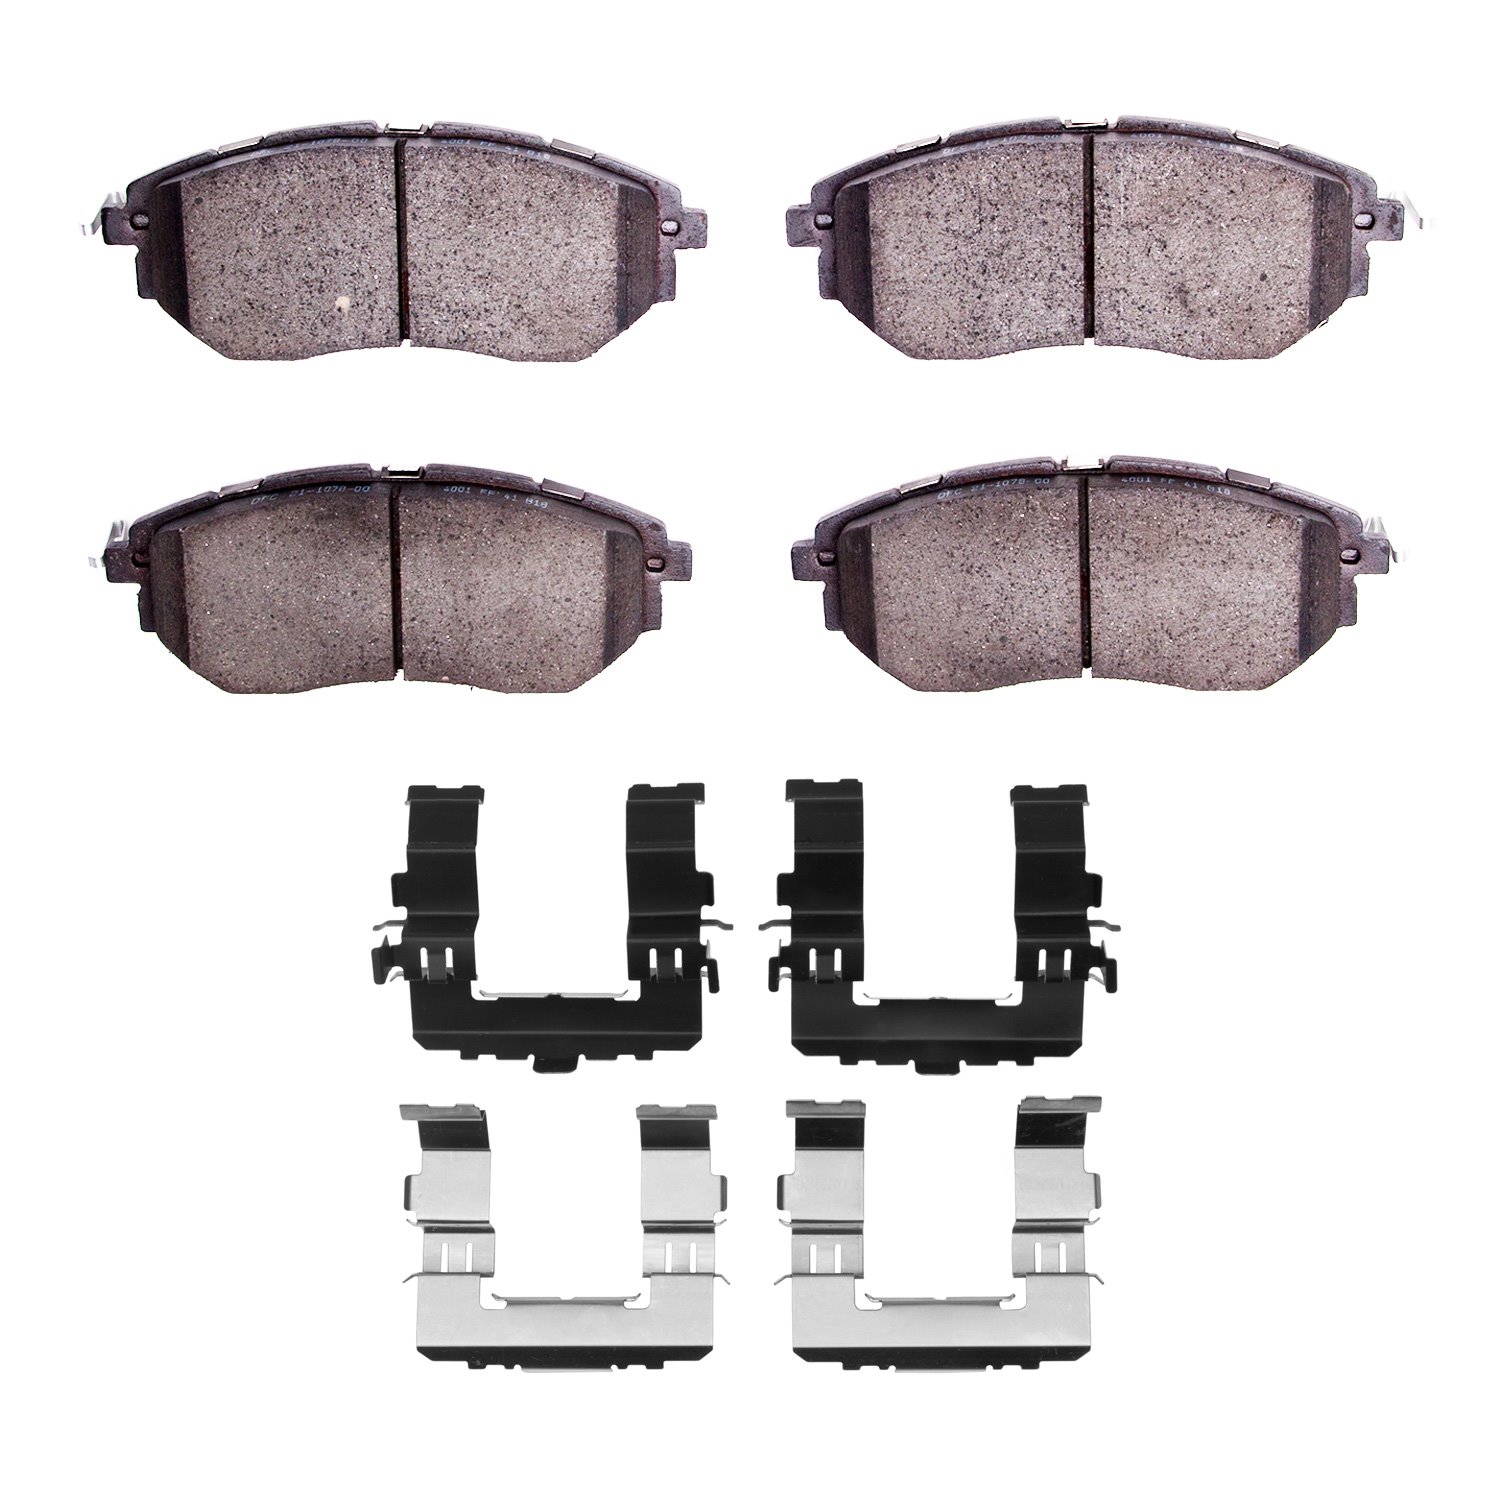 1310-1078-02 3000-Series Ceramic Brake Pads & Hardware Kit, 2015-2015 Subaru, Position: Front